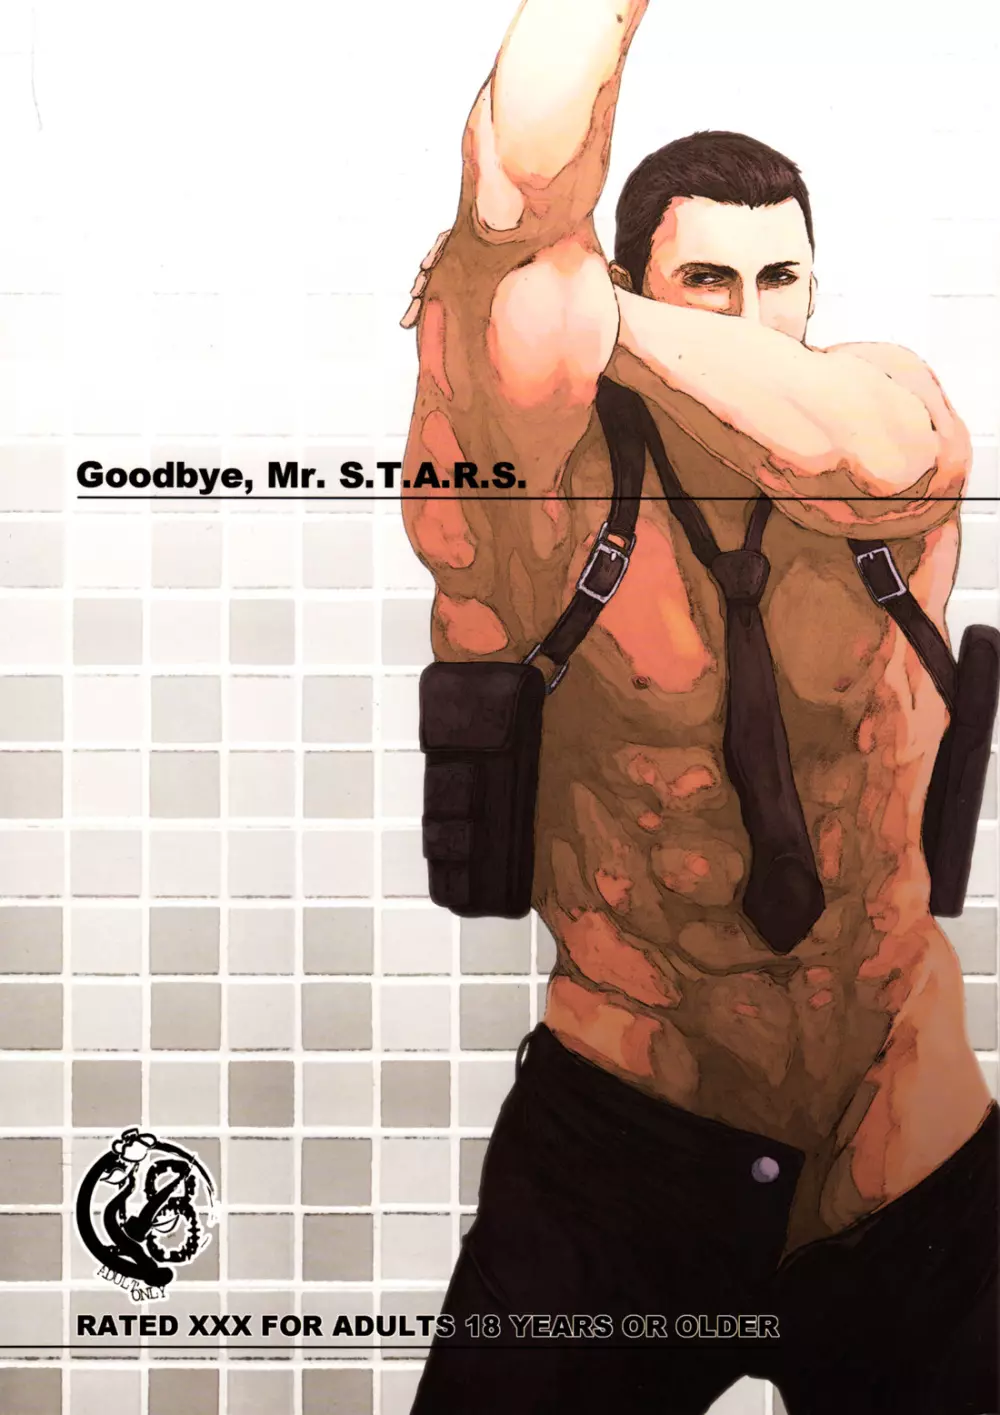 Oinarioimo: Goodbye MR S.T.A.R.S